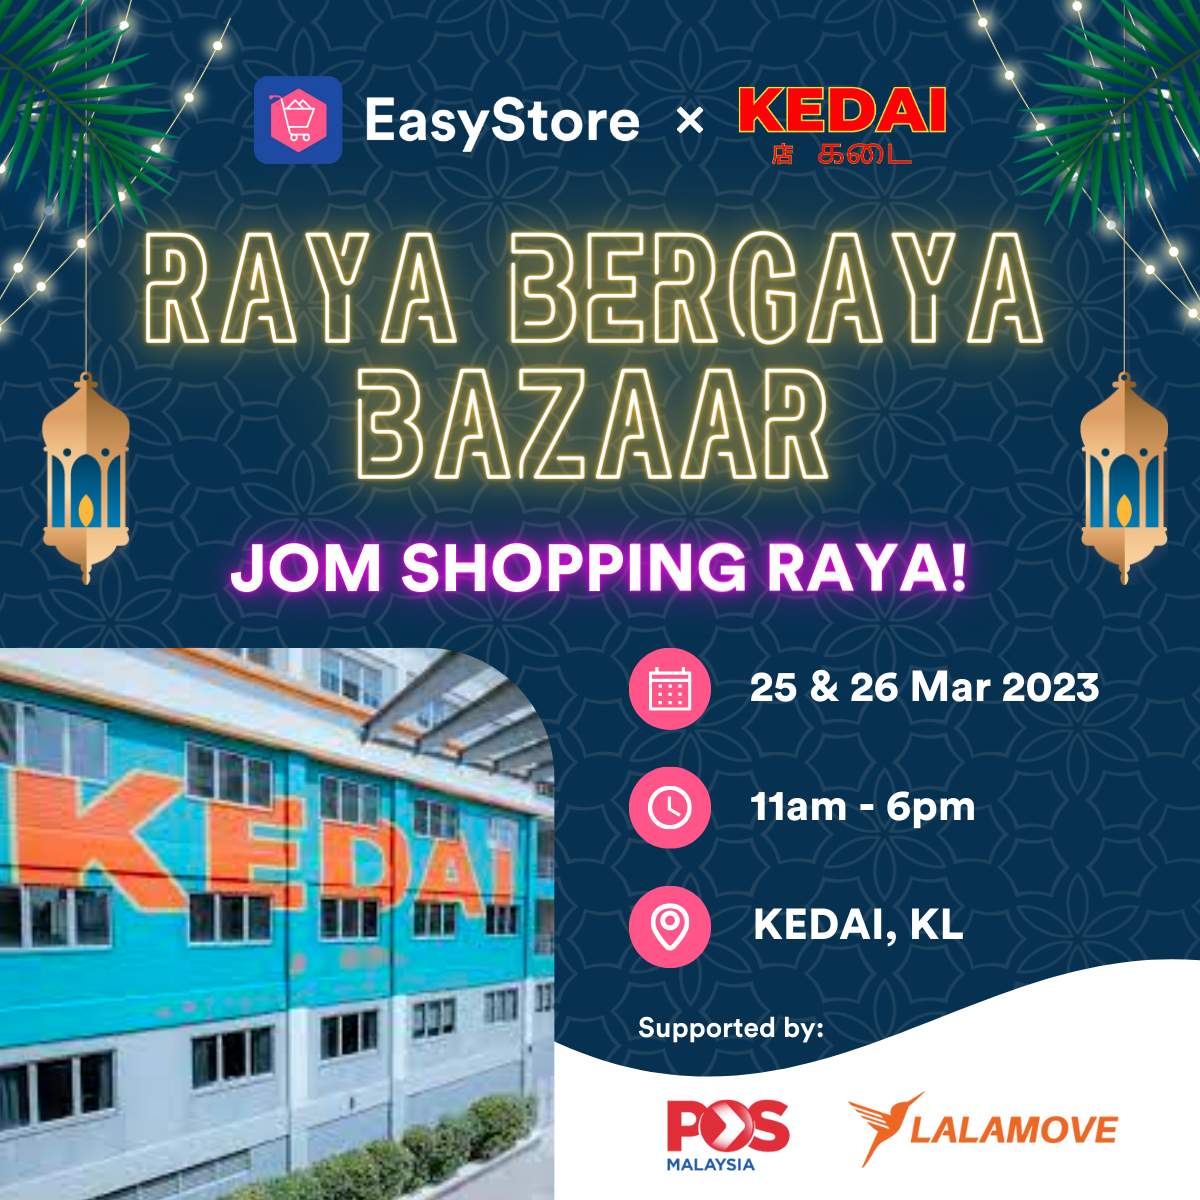 EasyStore x KEDAI - Raya Bergaya Bazaar on 25 & 26 March | EasyStore